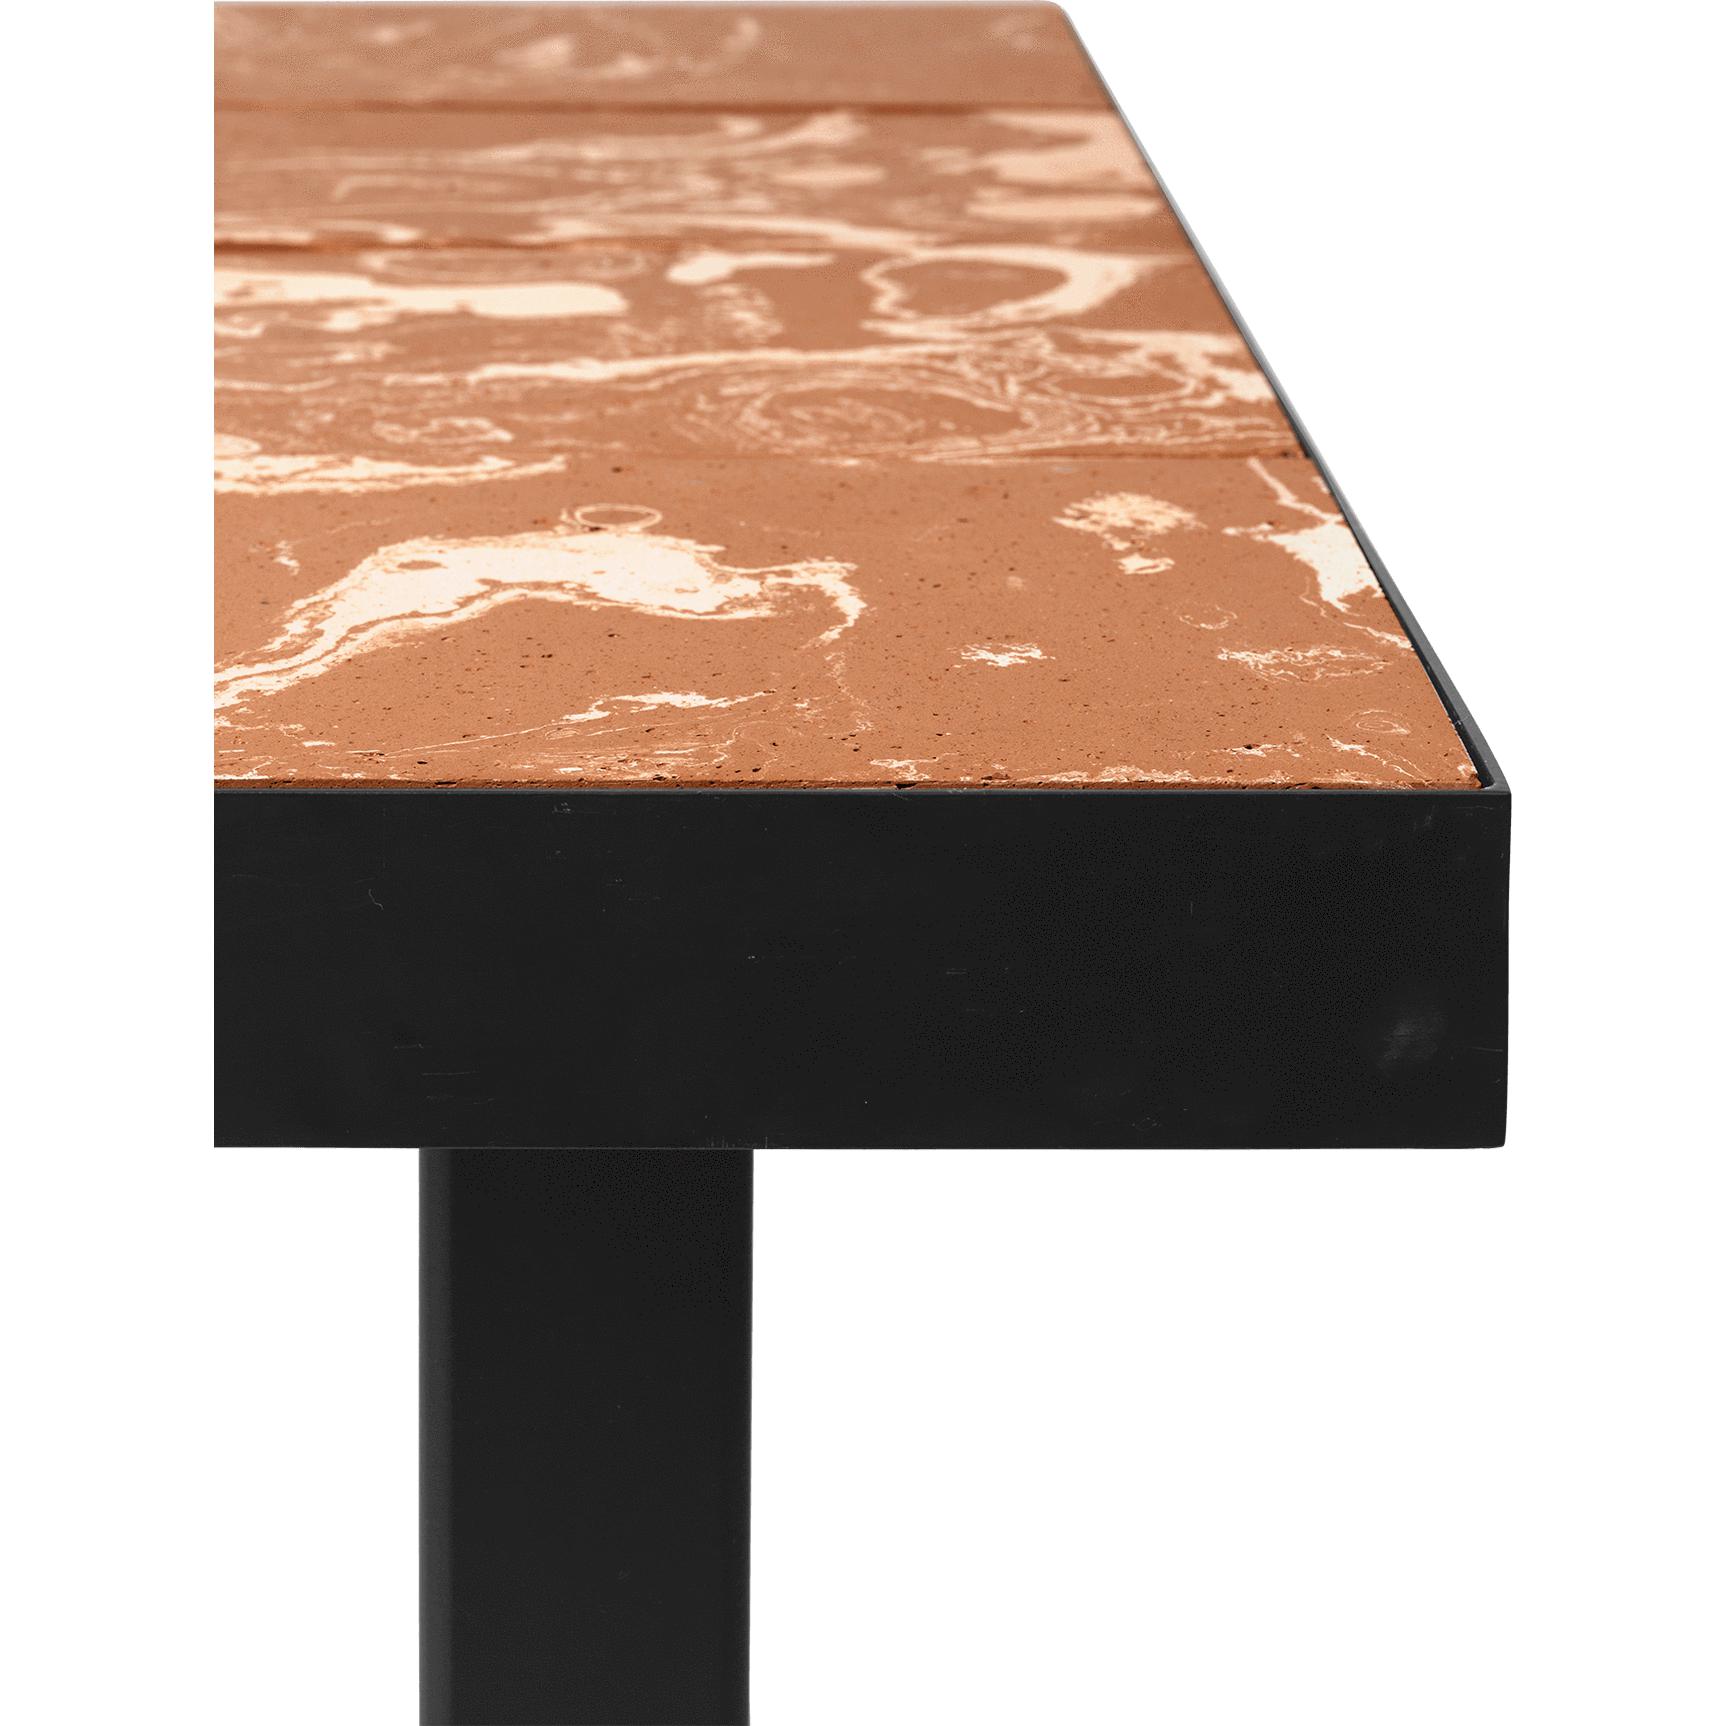 Konferenční stolek s obkladovým flodem, terakota/černá